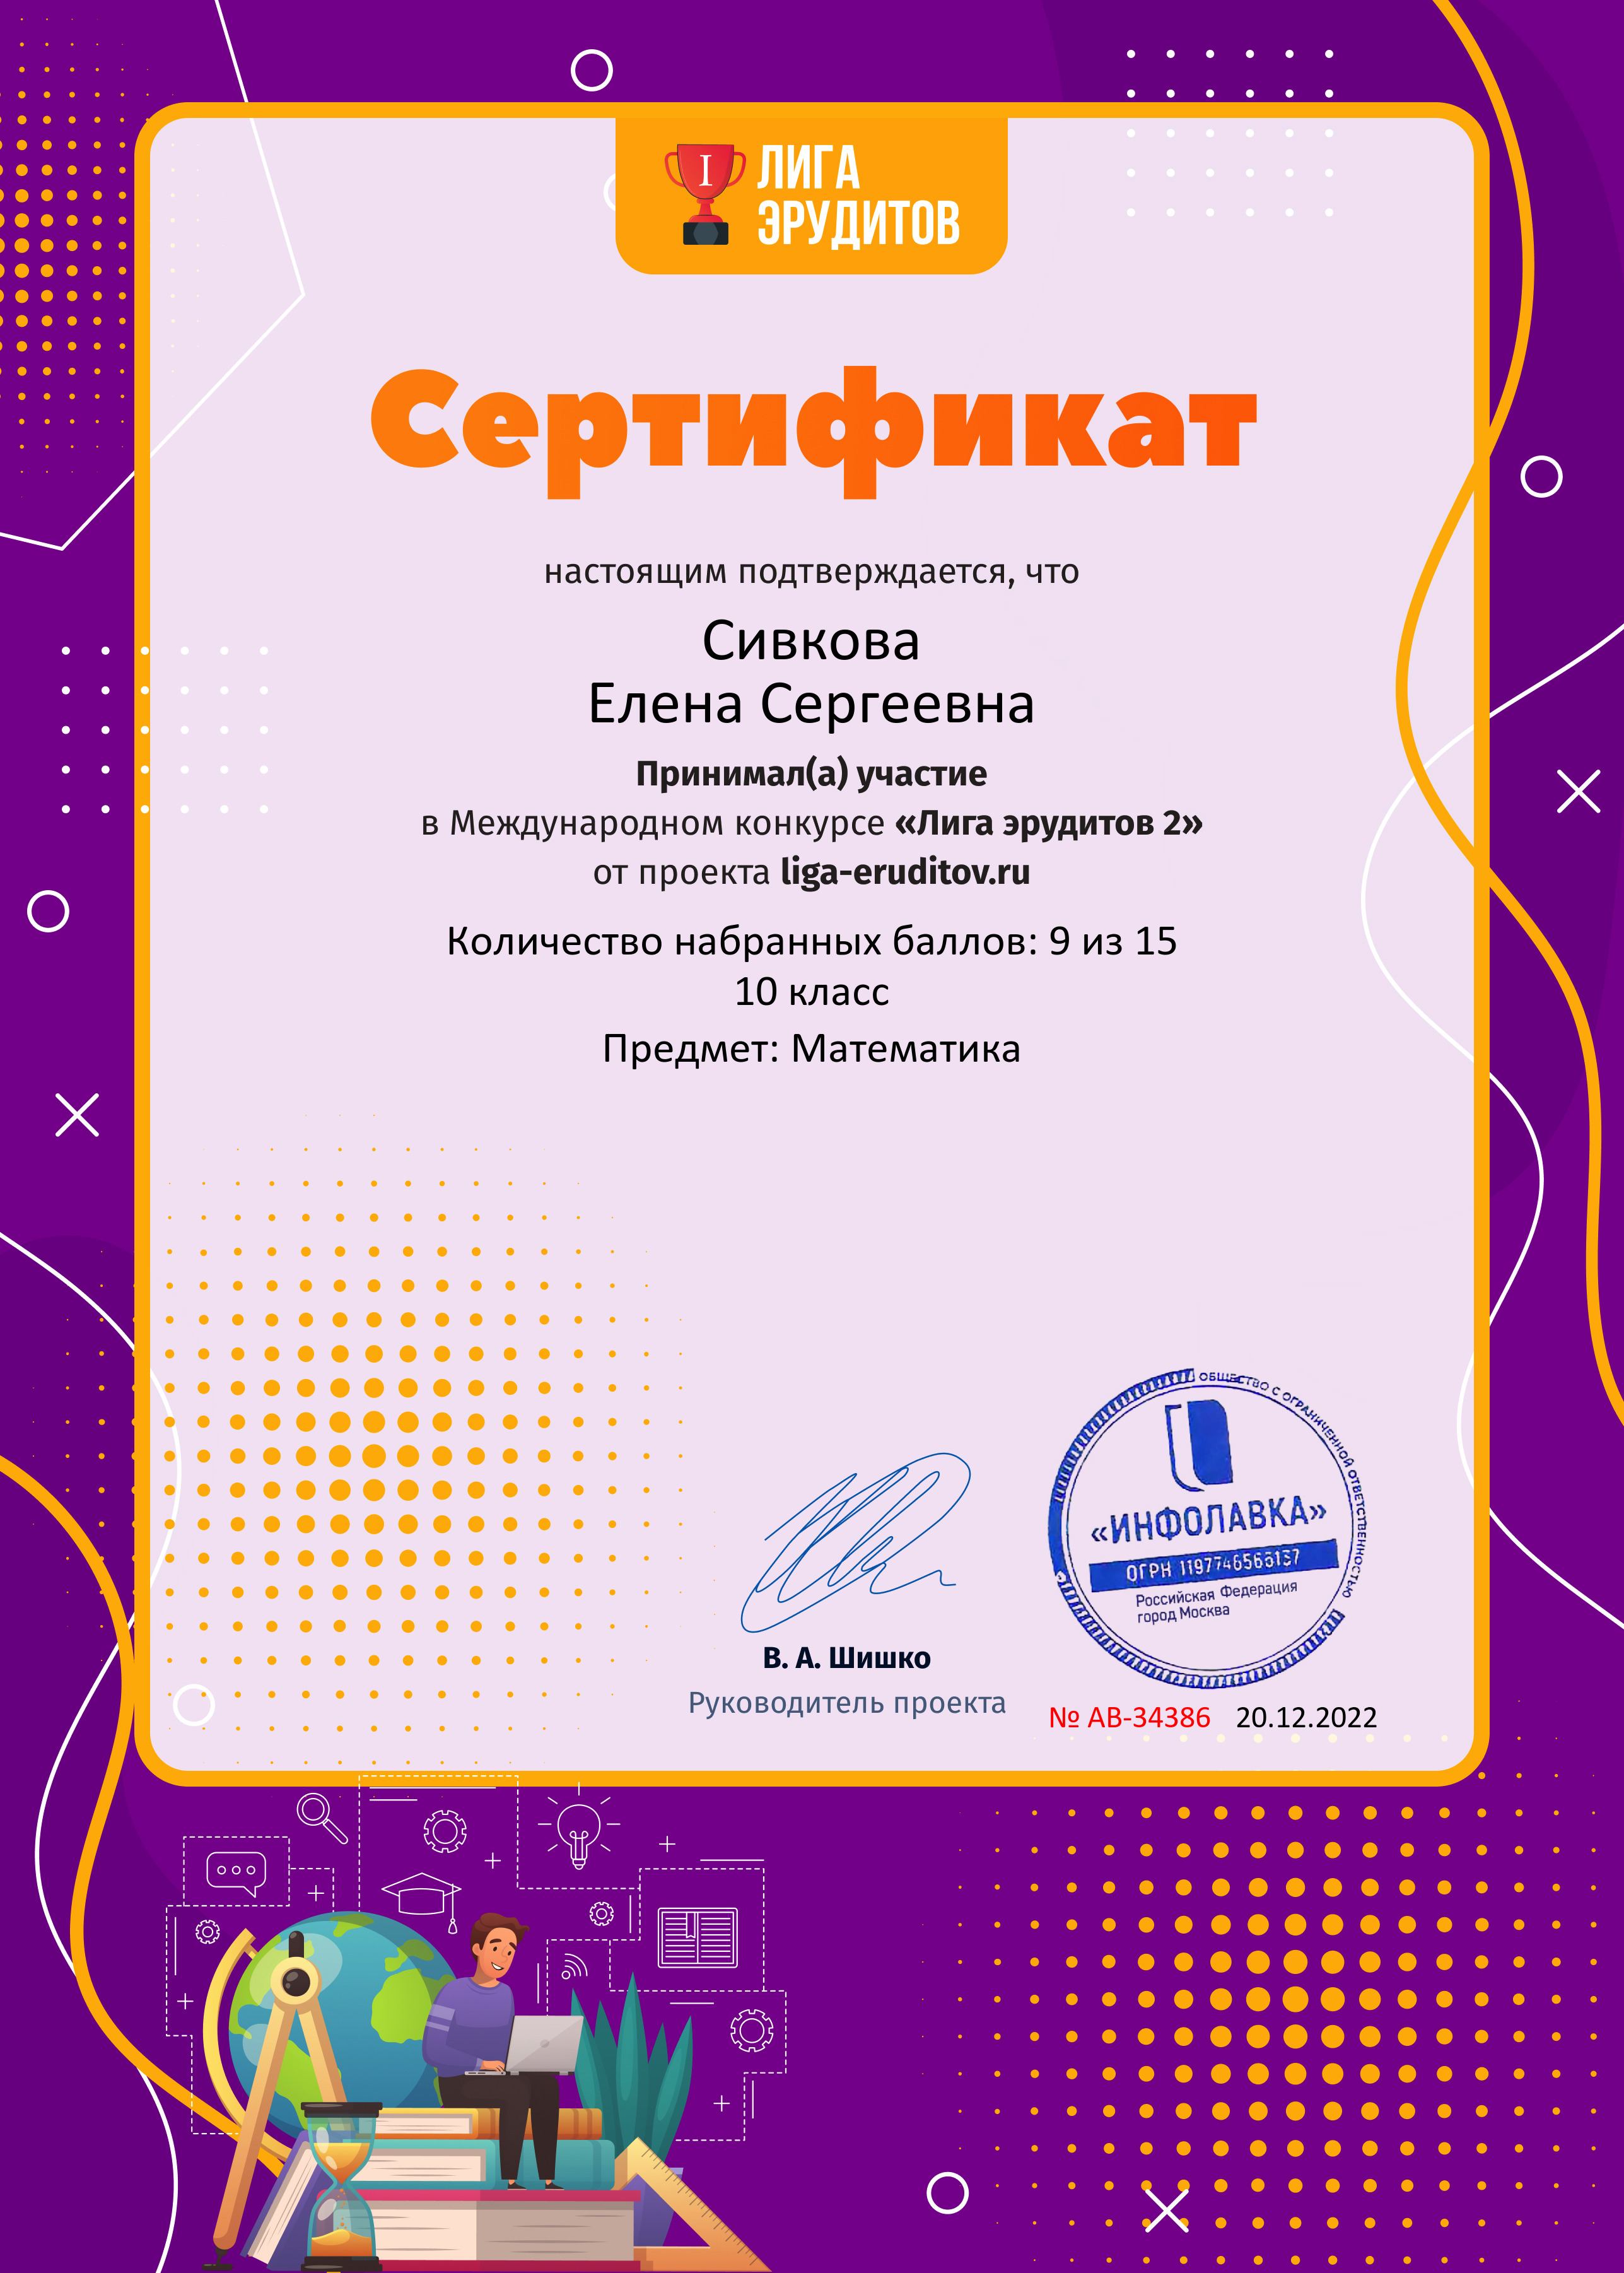 Сивкова Елена Сертификат проекта Лига Эрудитов №34386 2022